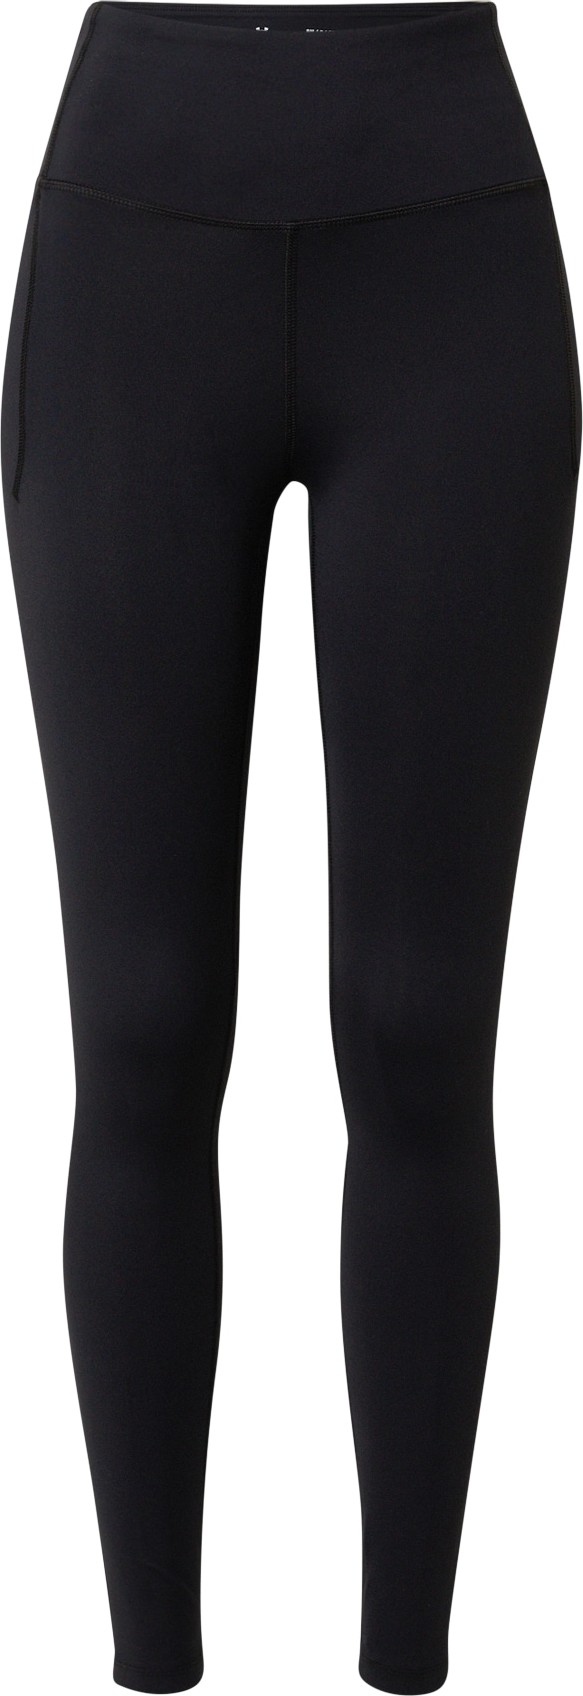 UNDER ARMOUR Sportovní kalhoty 'Meridian' černá / bílá